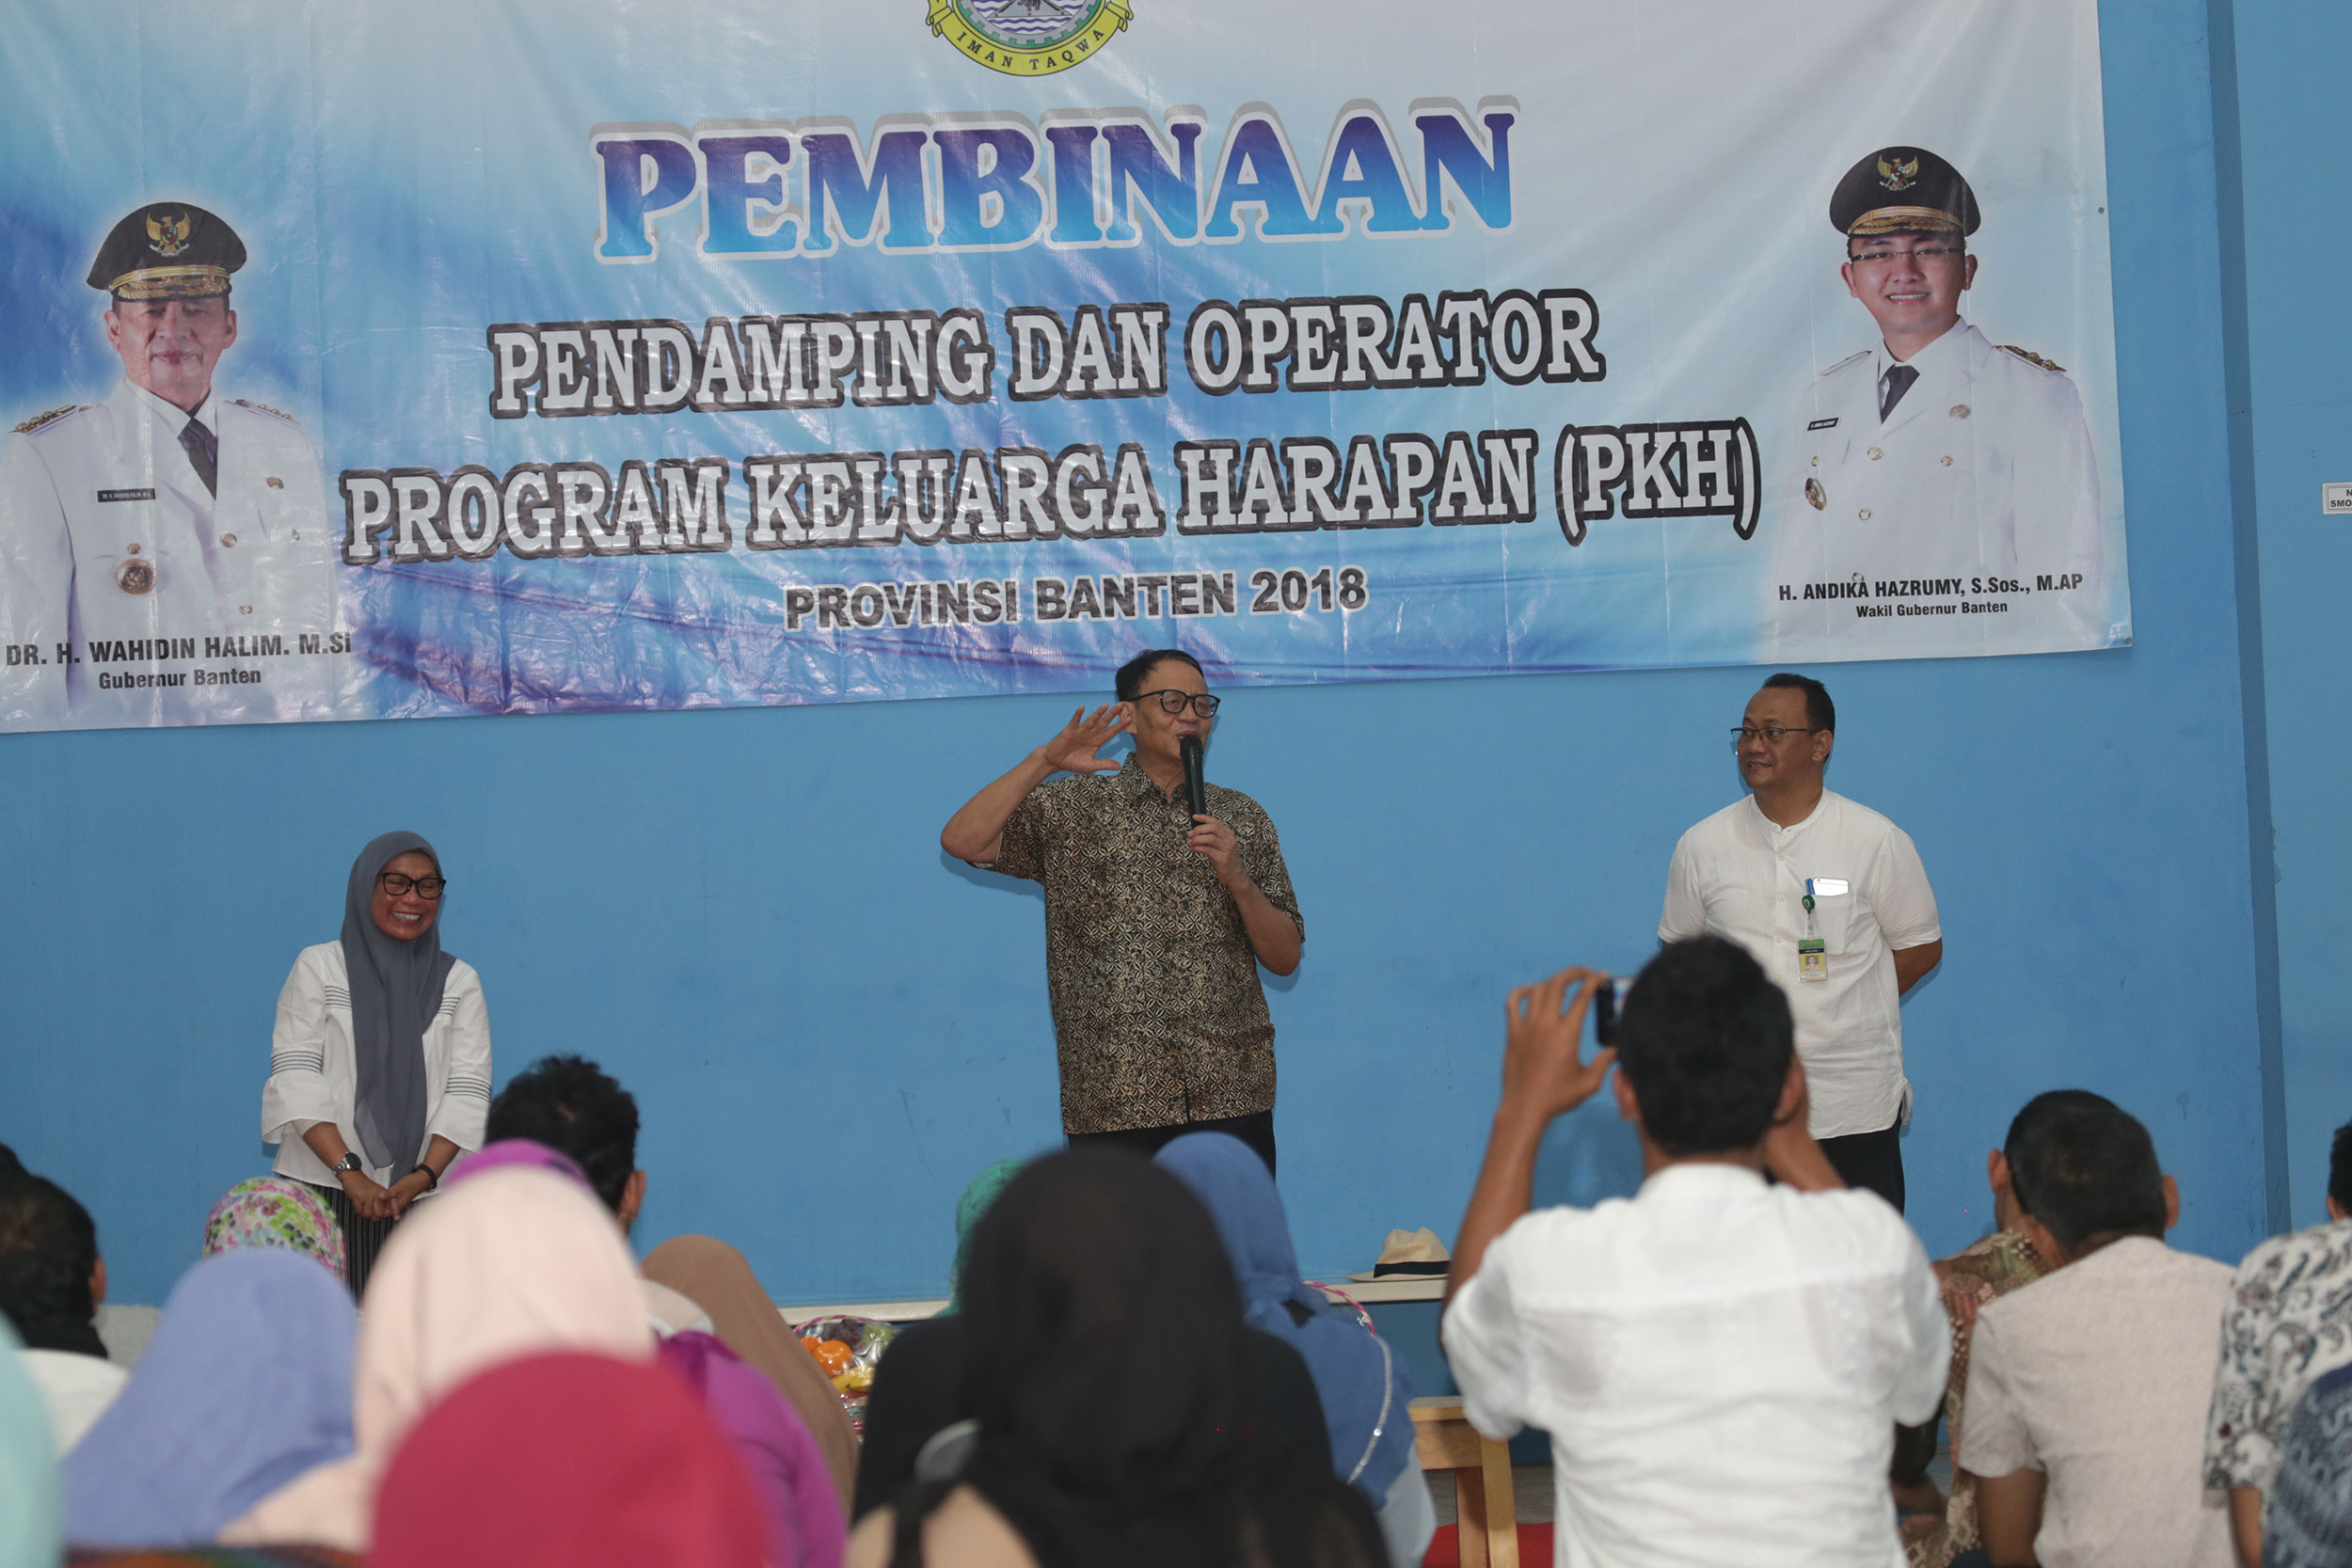 Pembinaan Pendamping dan Operator Program Keluarga harapan di Pinang